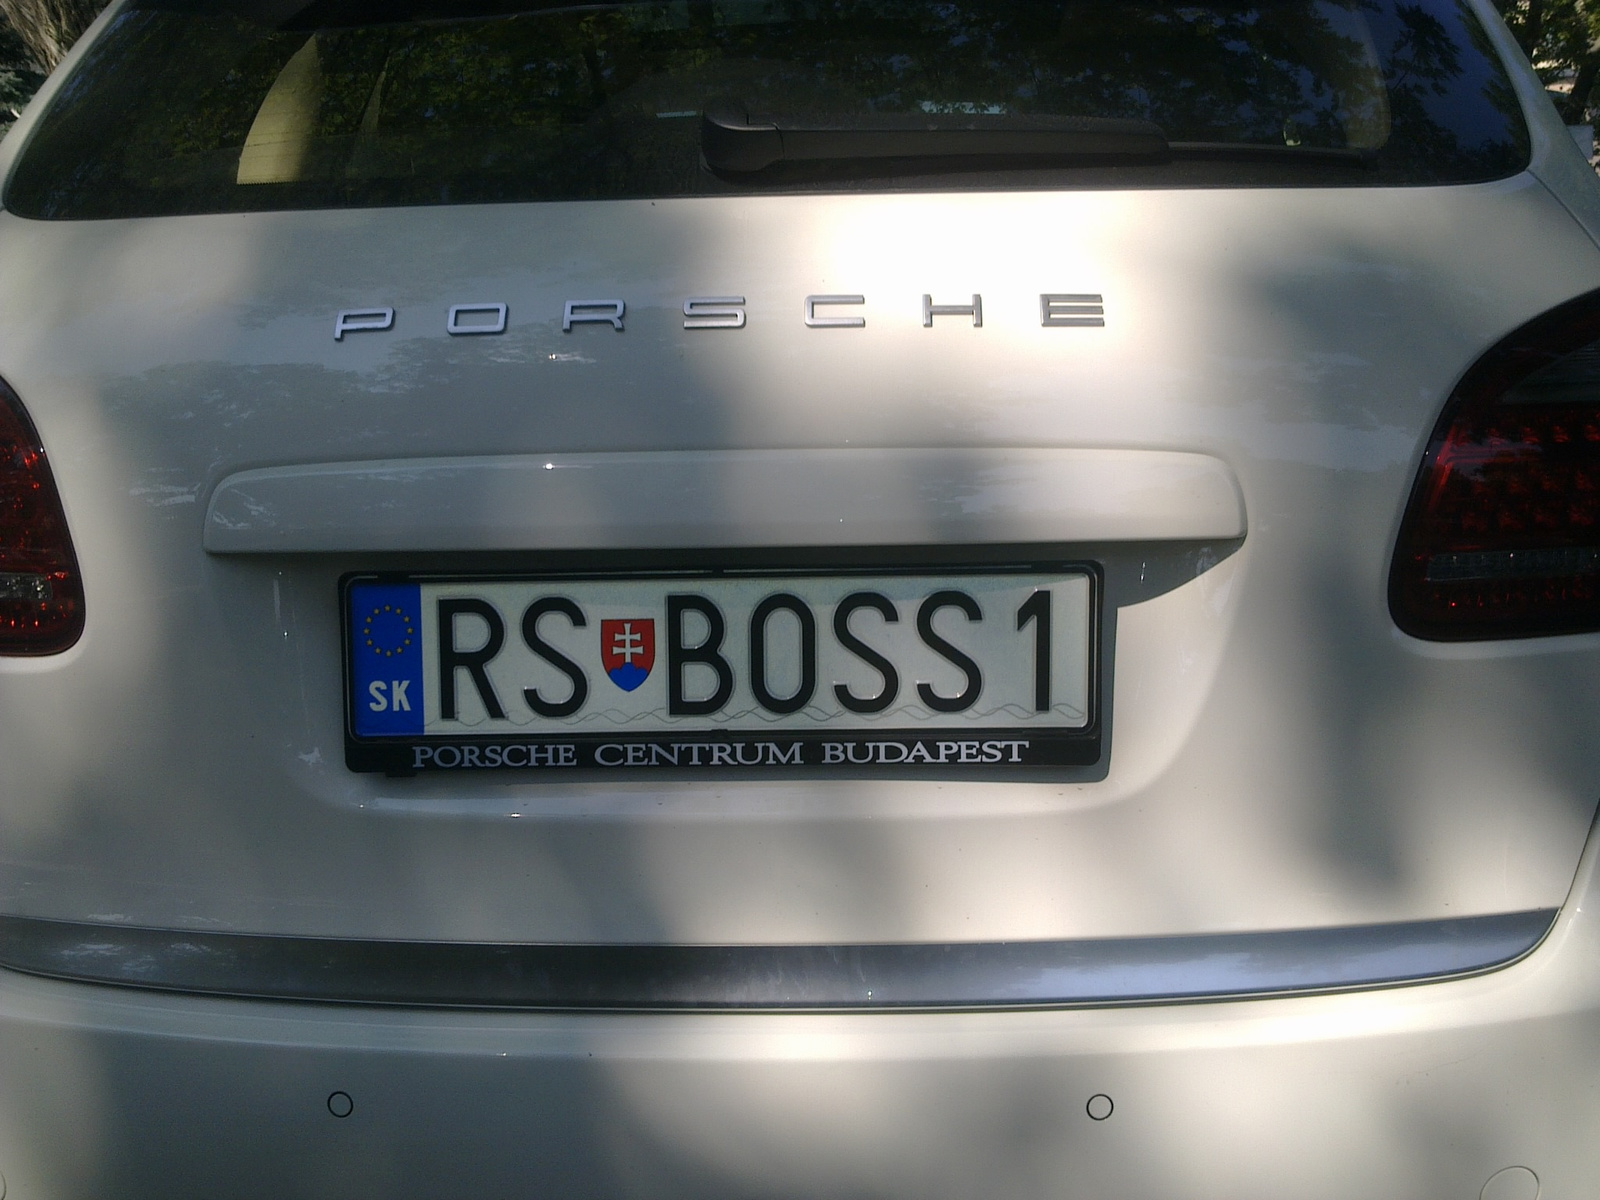 rs boss 1